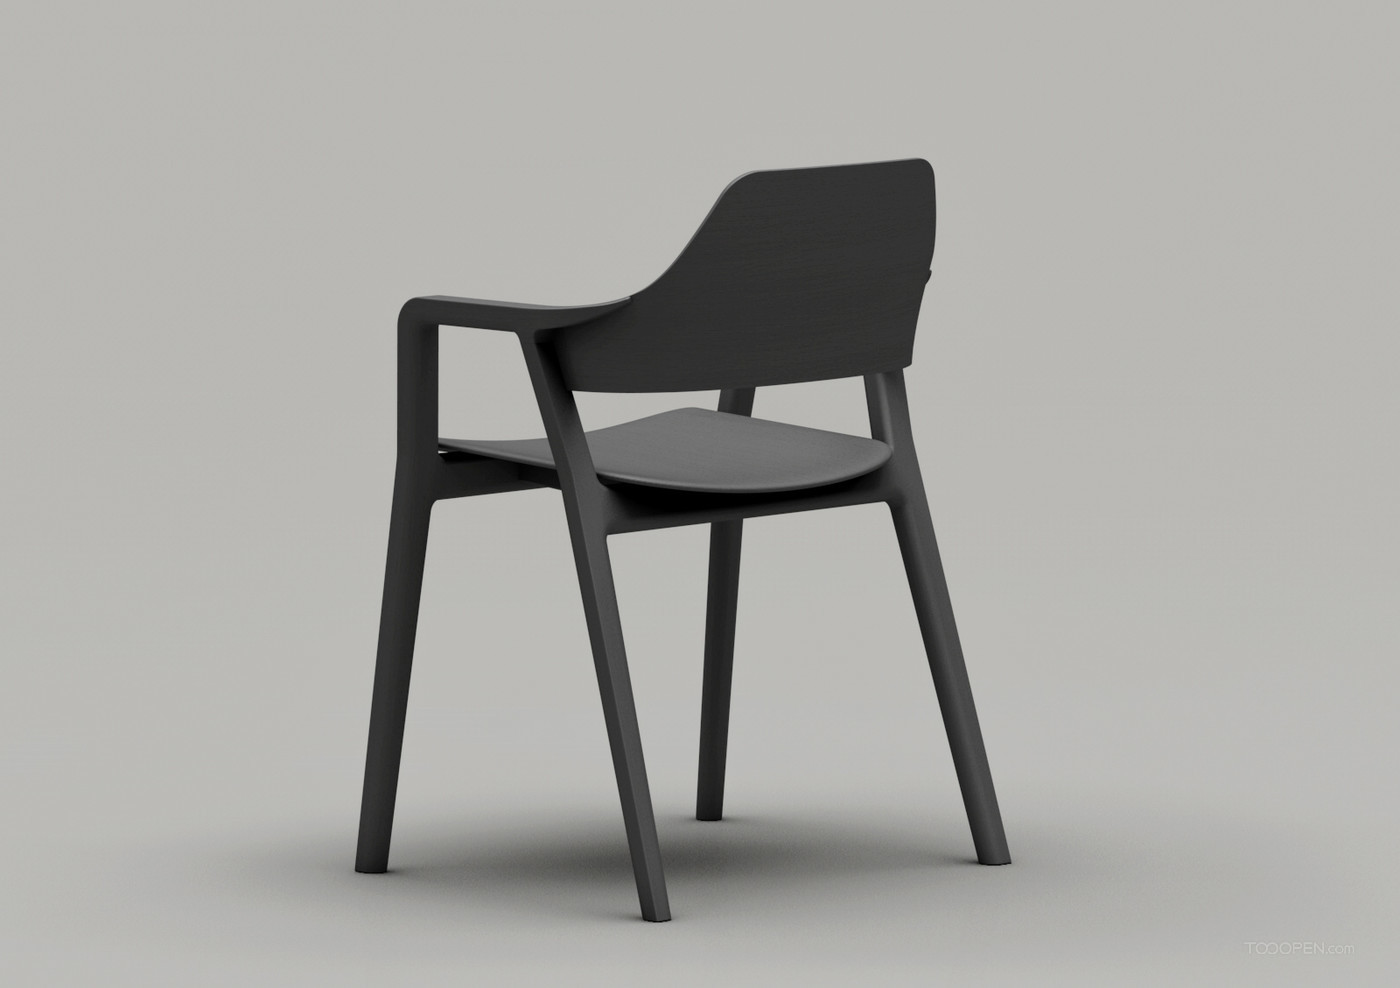 國外創意極簡座椅家具產品設計欣賞-09